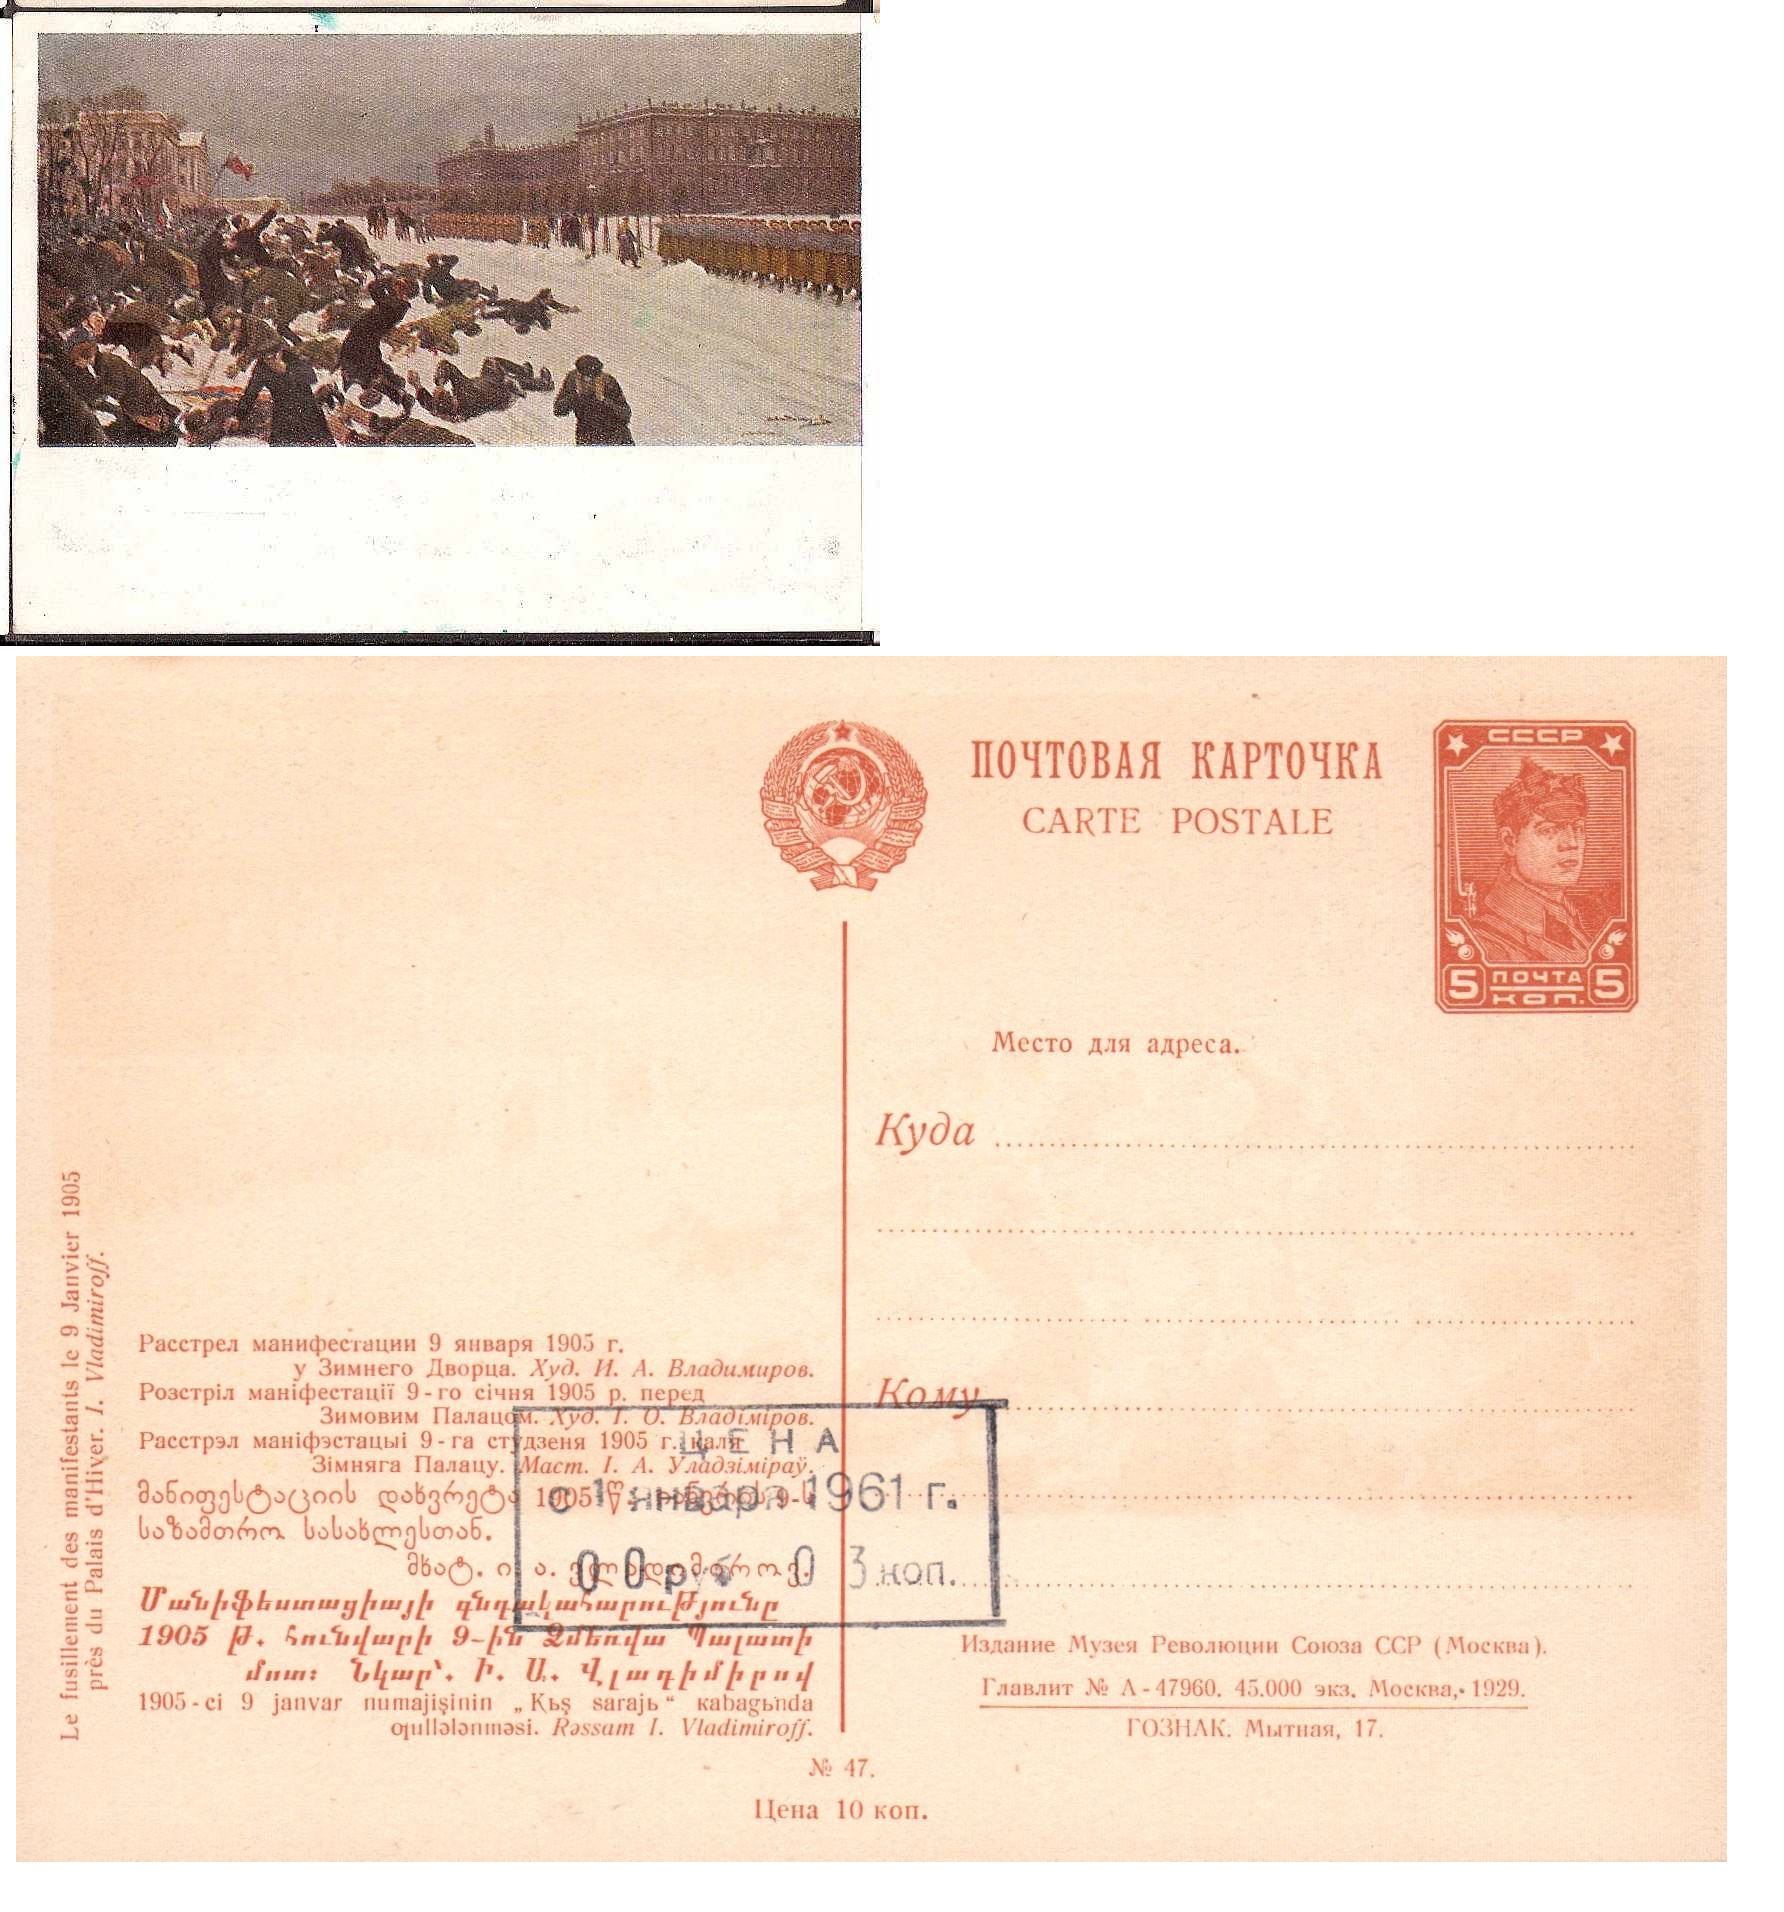 Postal Stationery - Soviet Union Scott 2647 Michel P94.47 